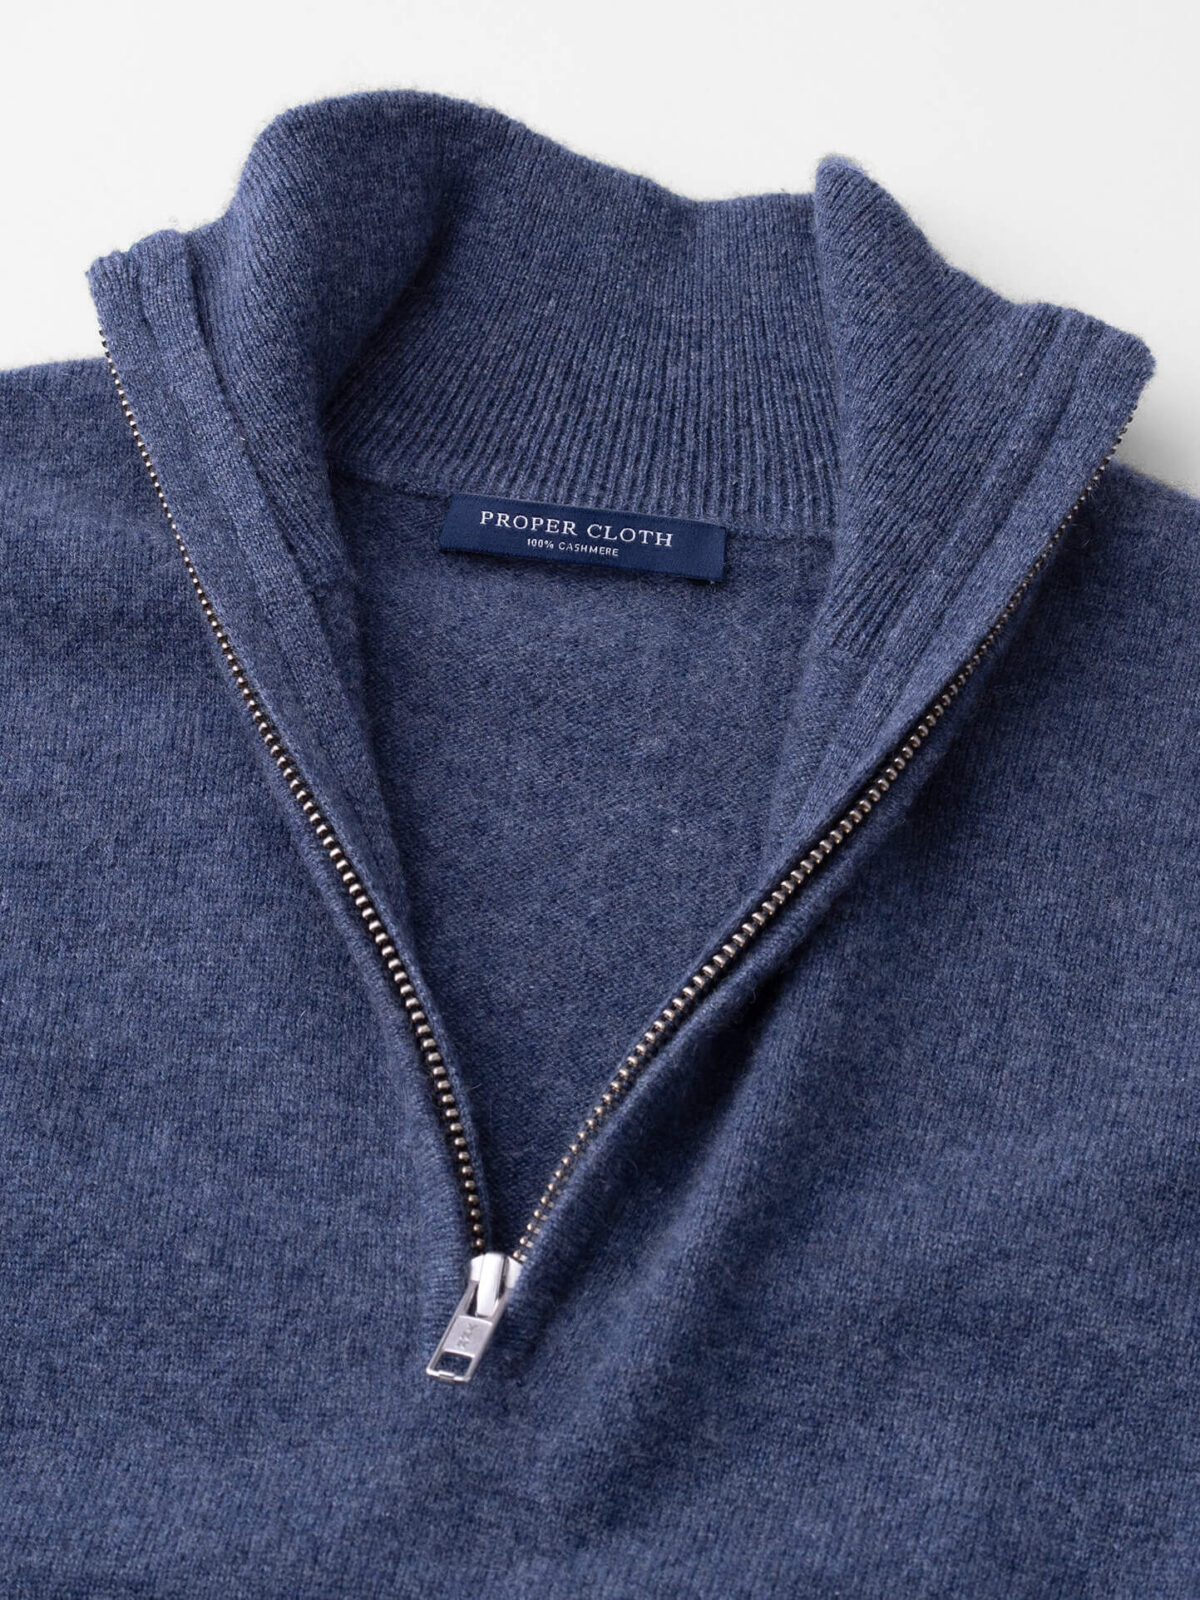 Slate Cashmere Half-Zip Sweater